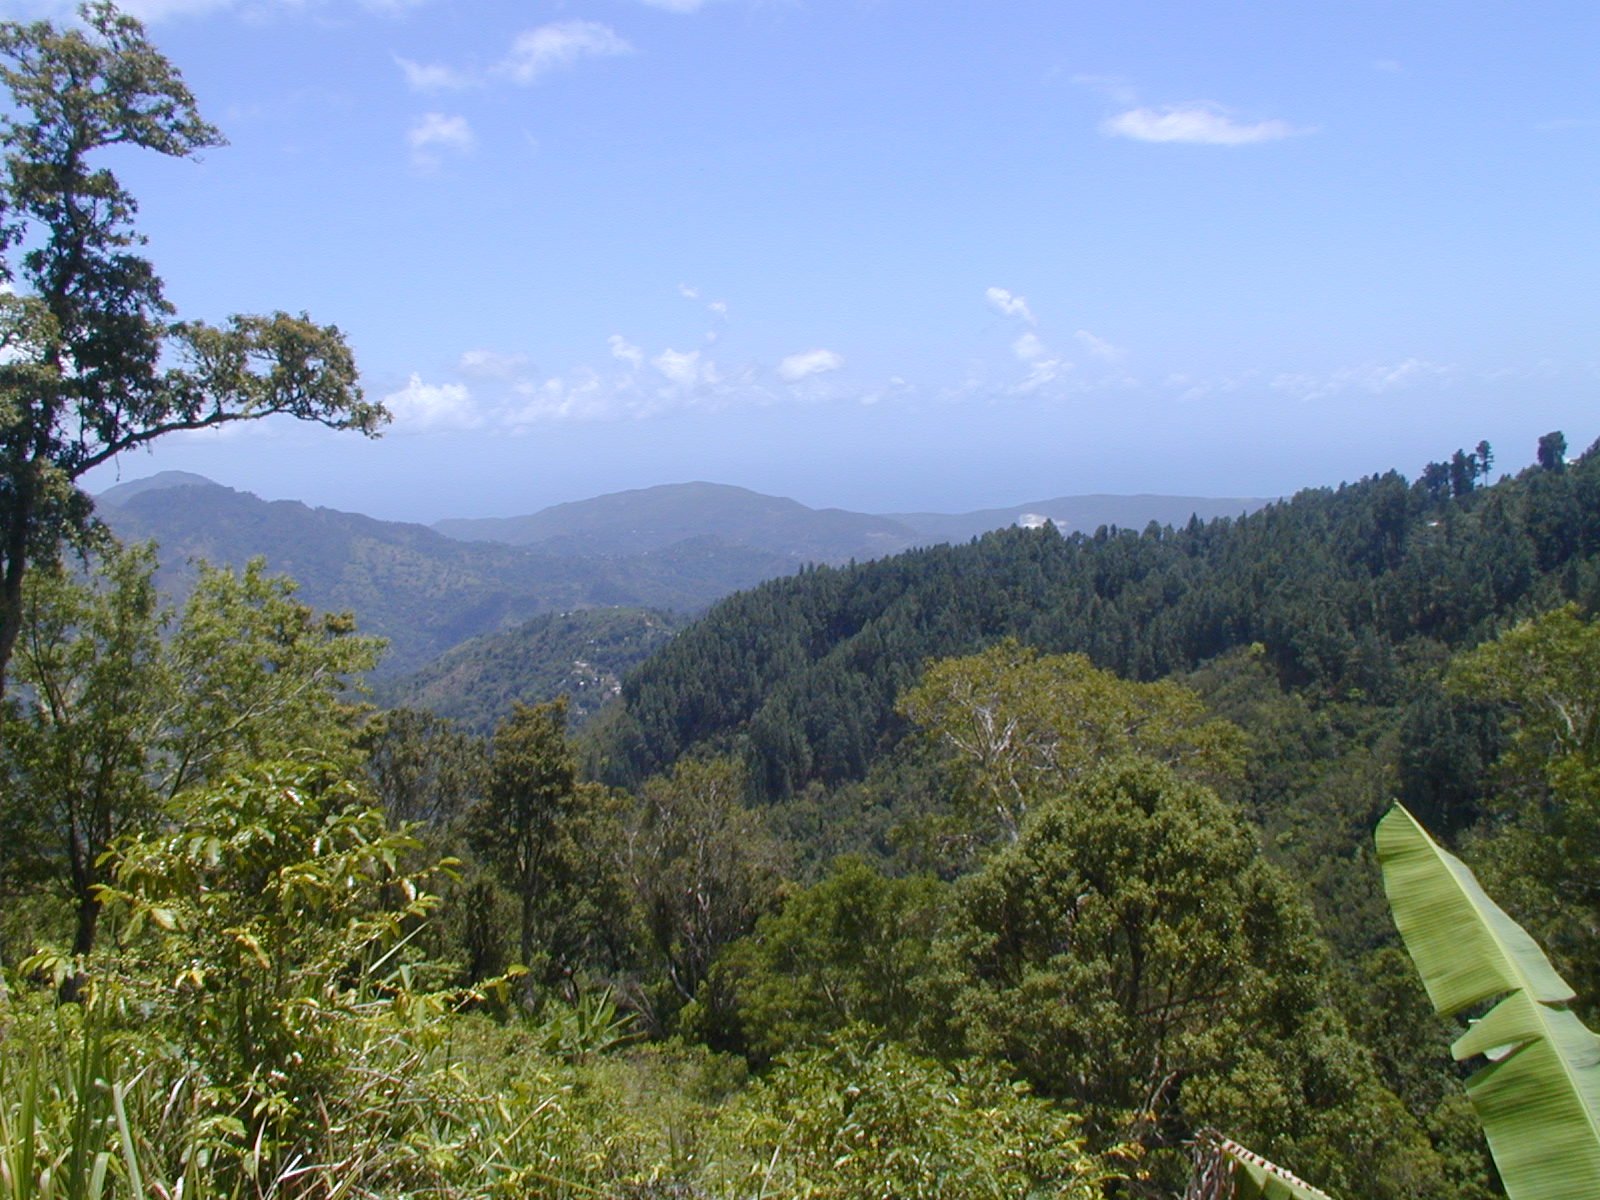 Blue Mountain en Jamaica, una de las montañas más altas del Caribe